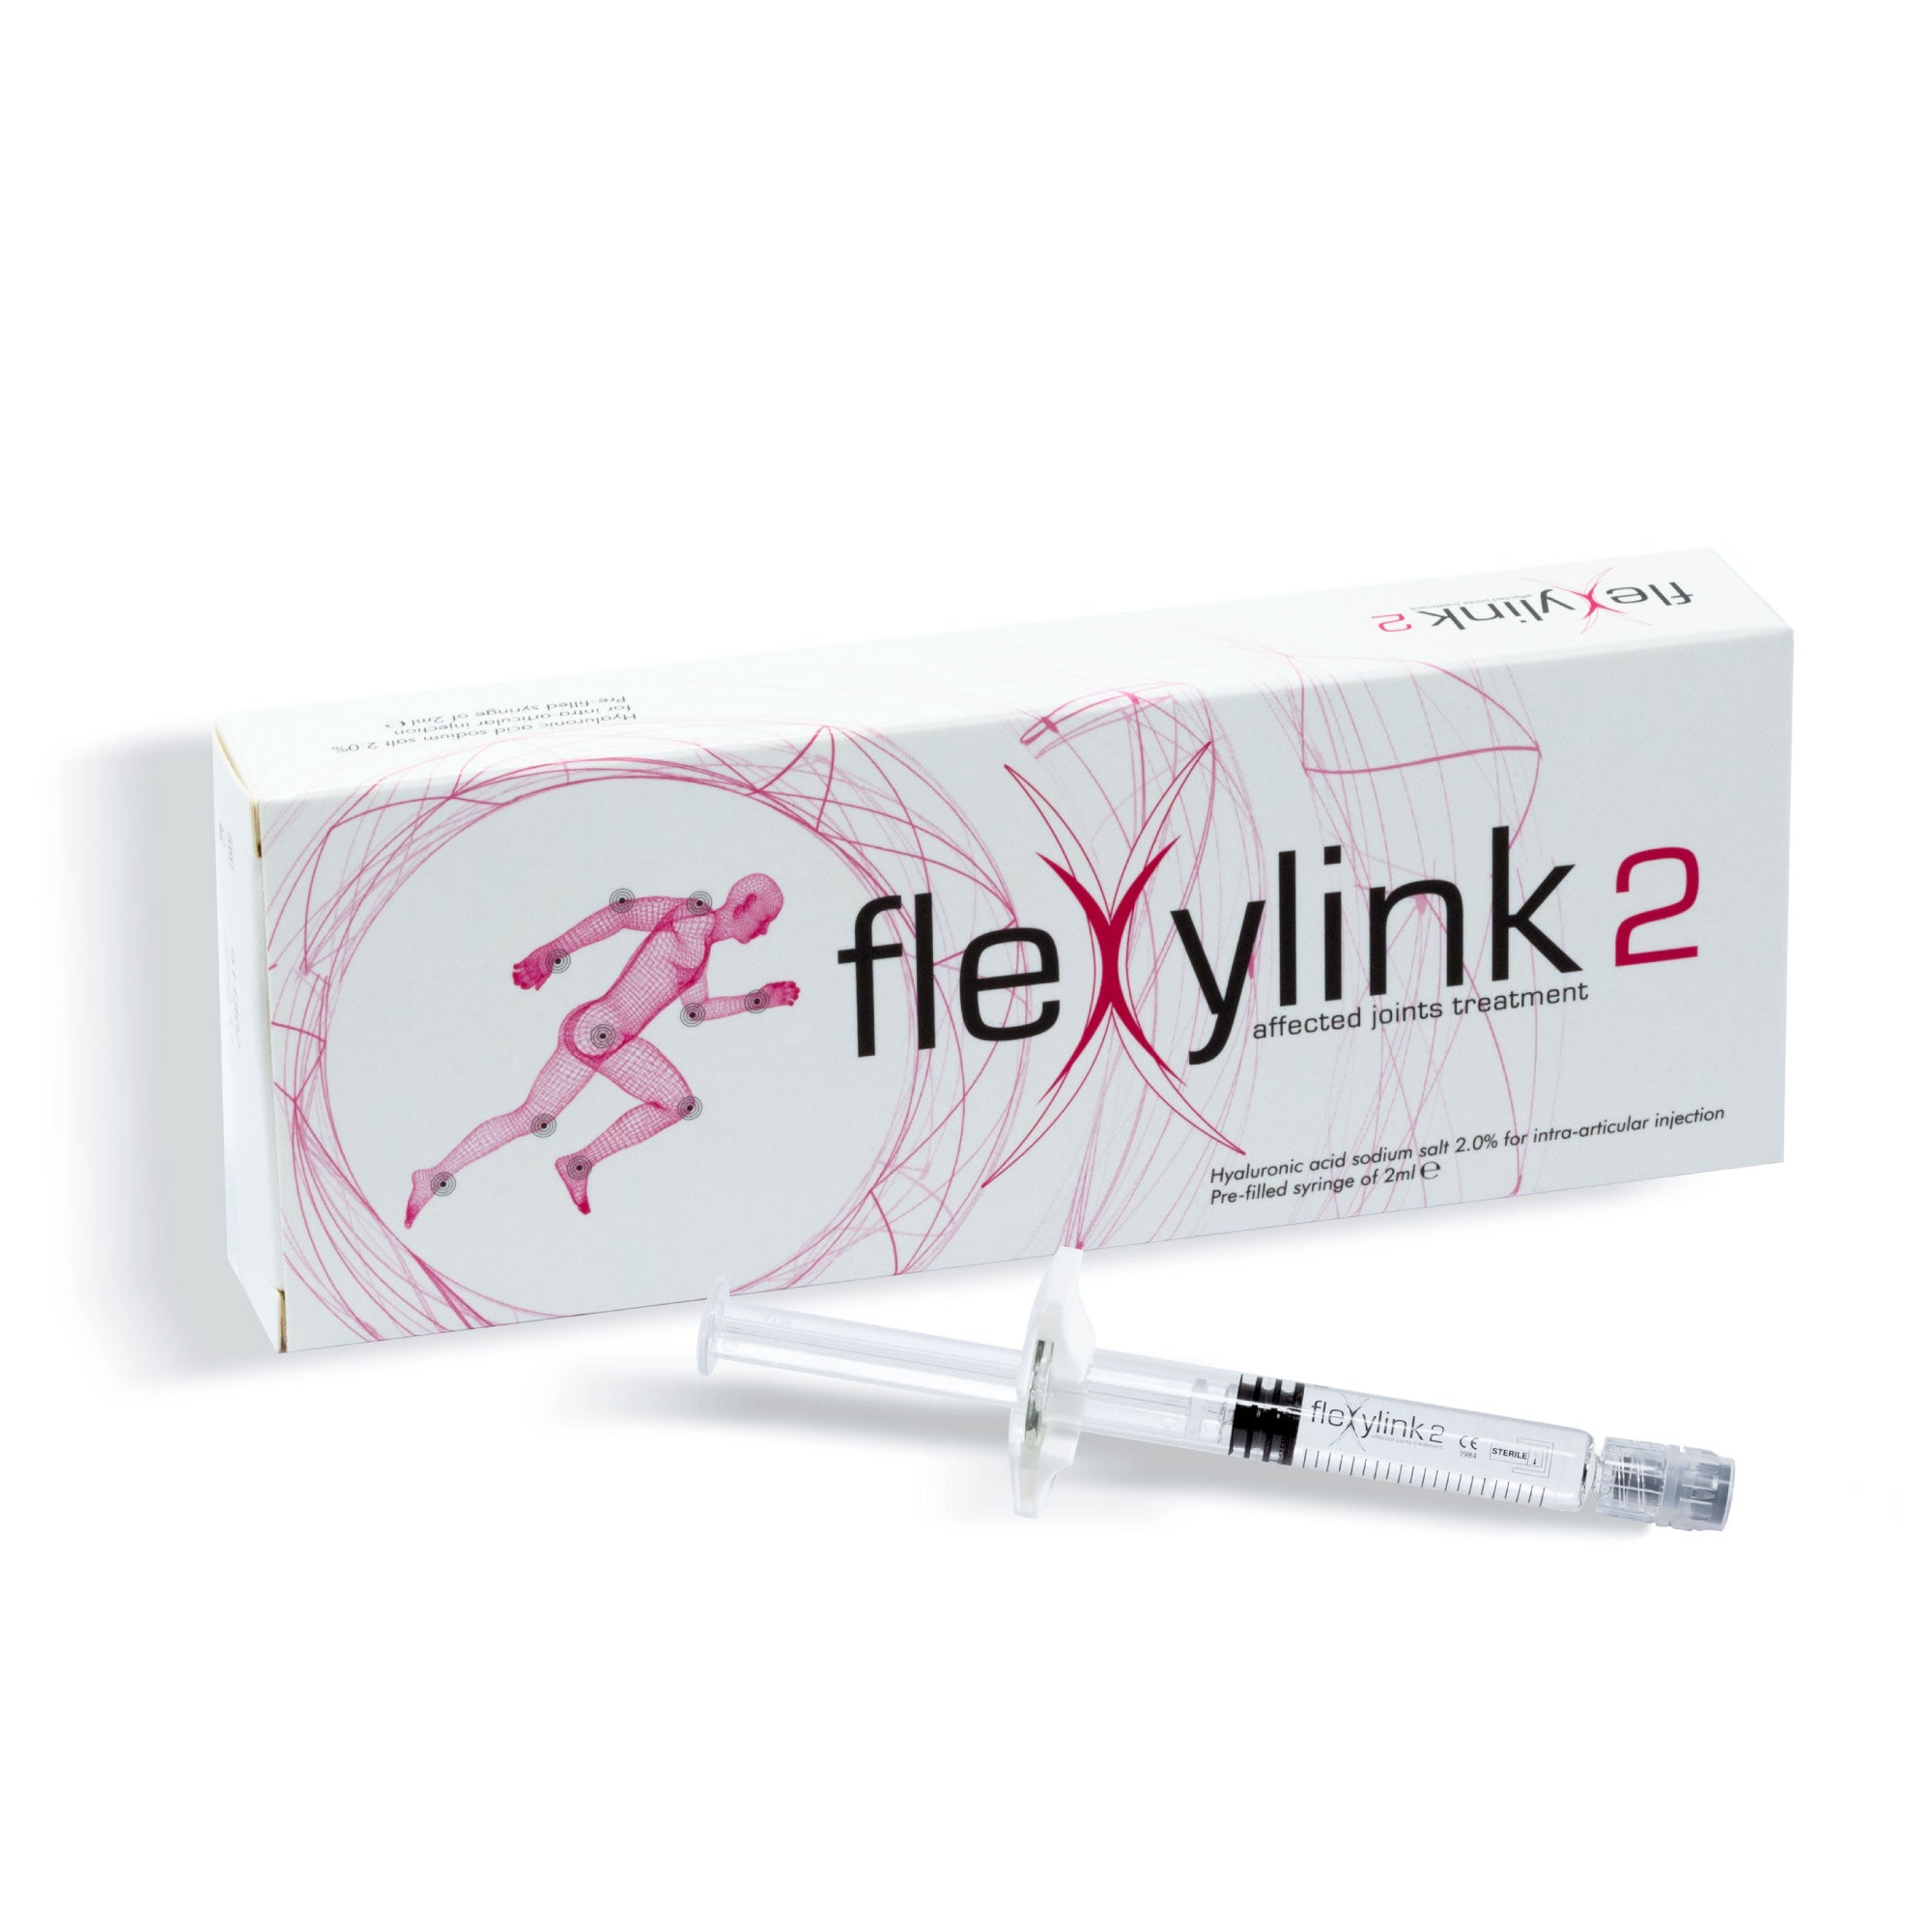 FLEXYLINK 2 - Acido Ialuronico ad Elevato Grado di Viscosità per Articolazioni affette da OA